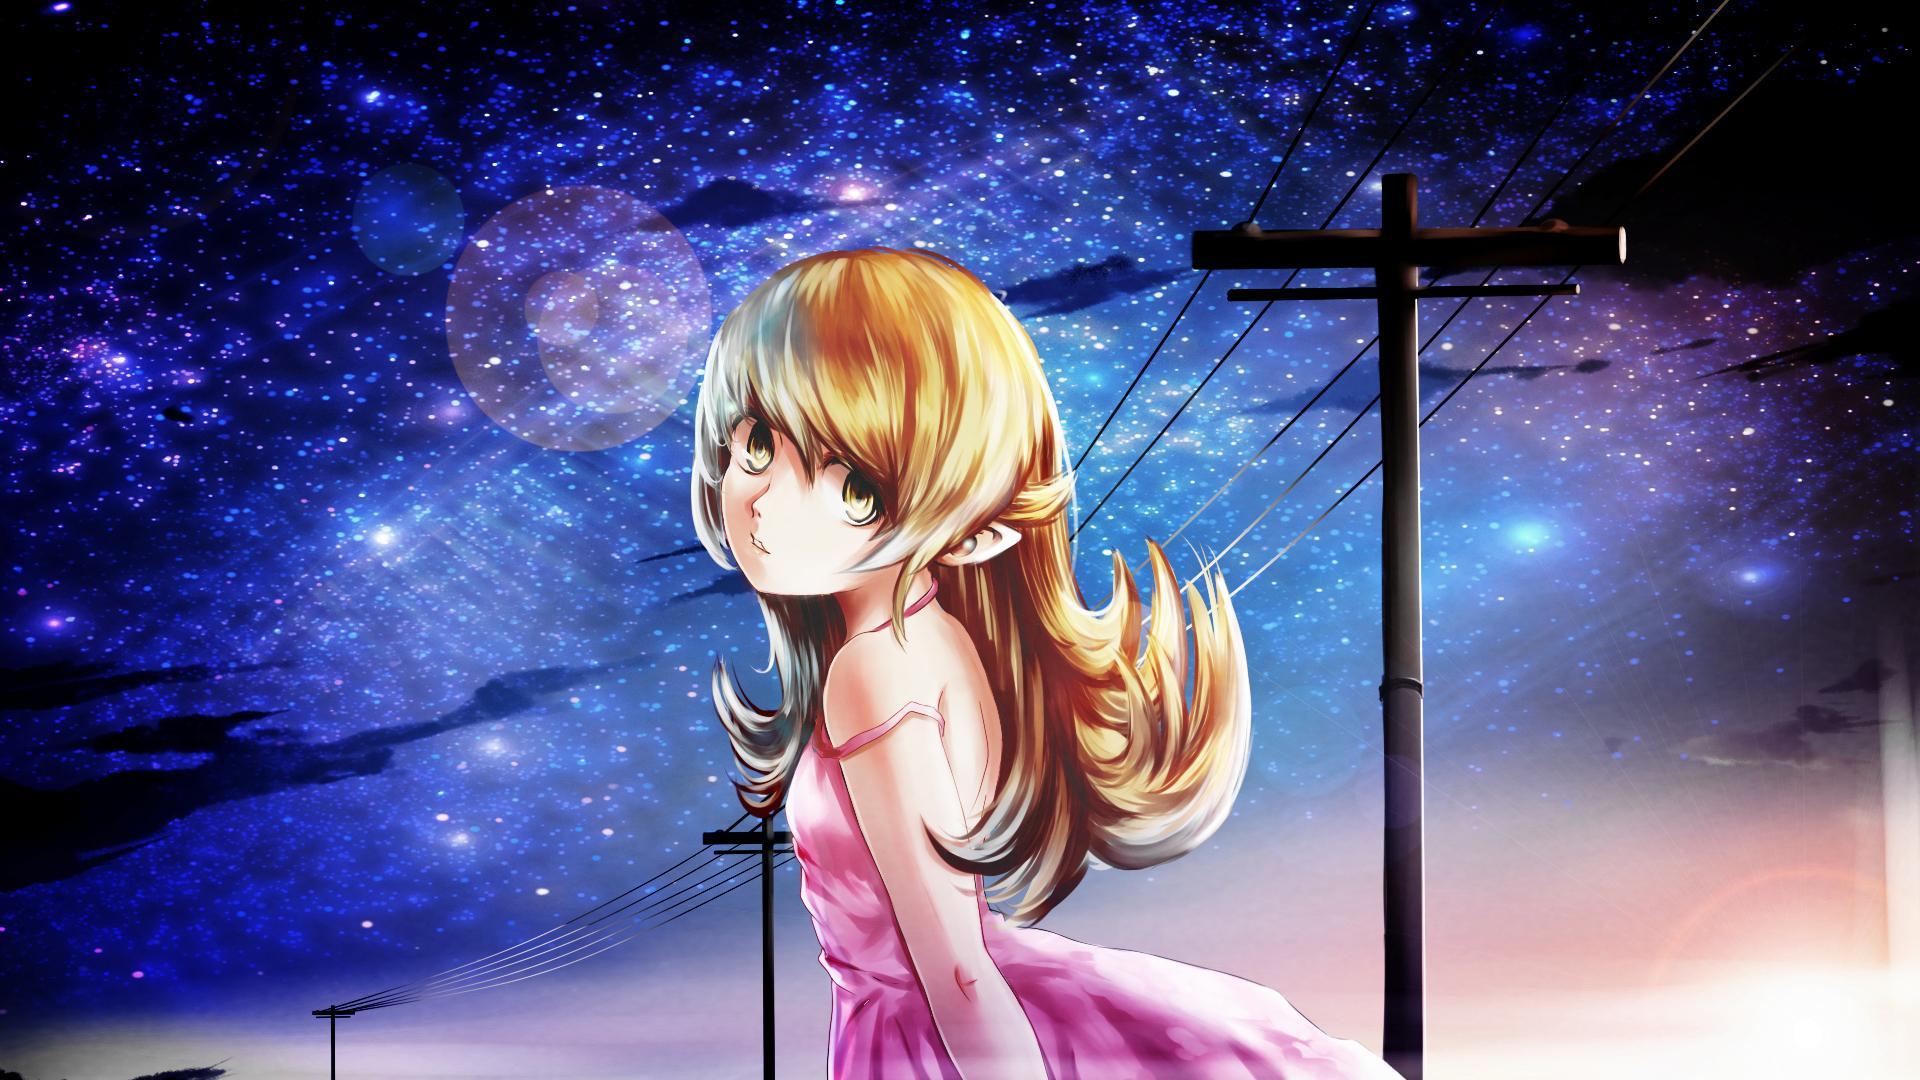 Anime Girl And Night Sky HD Wallpaperx1080